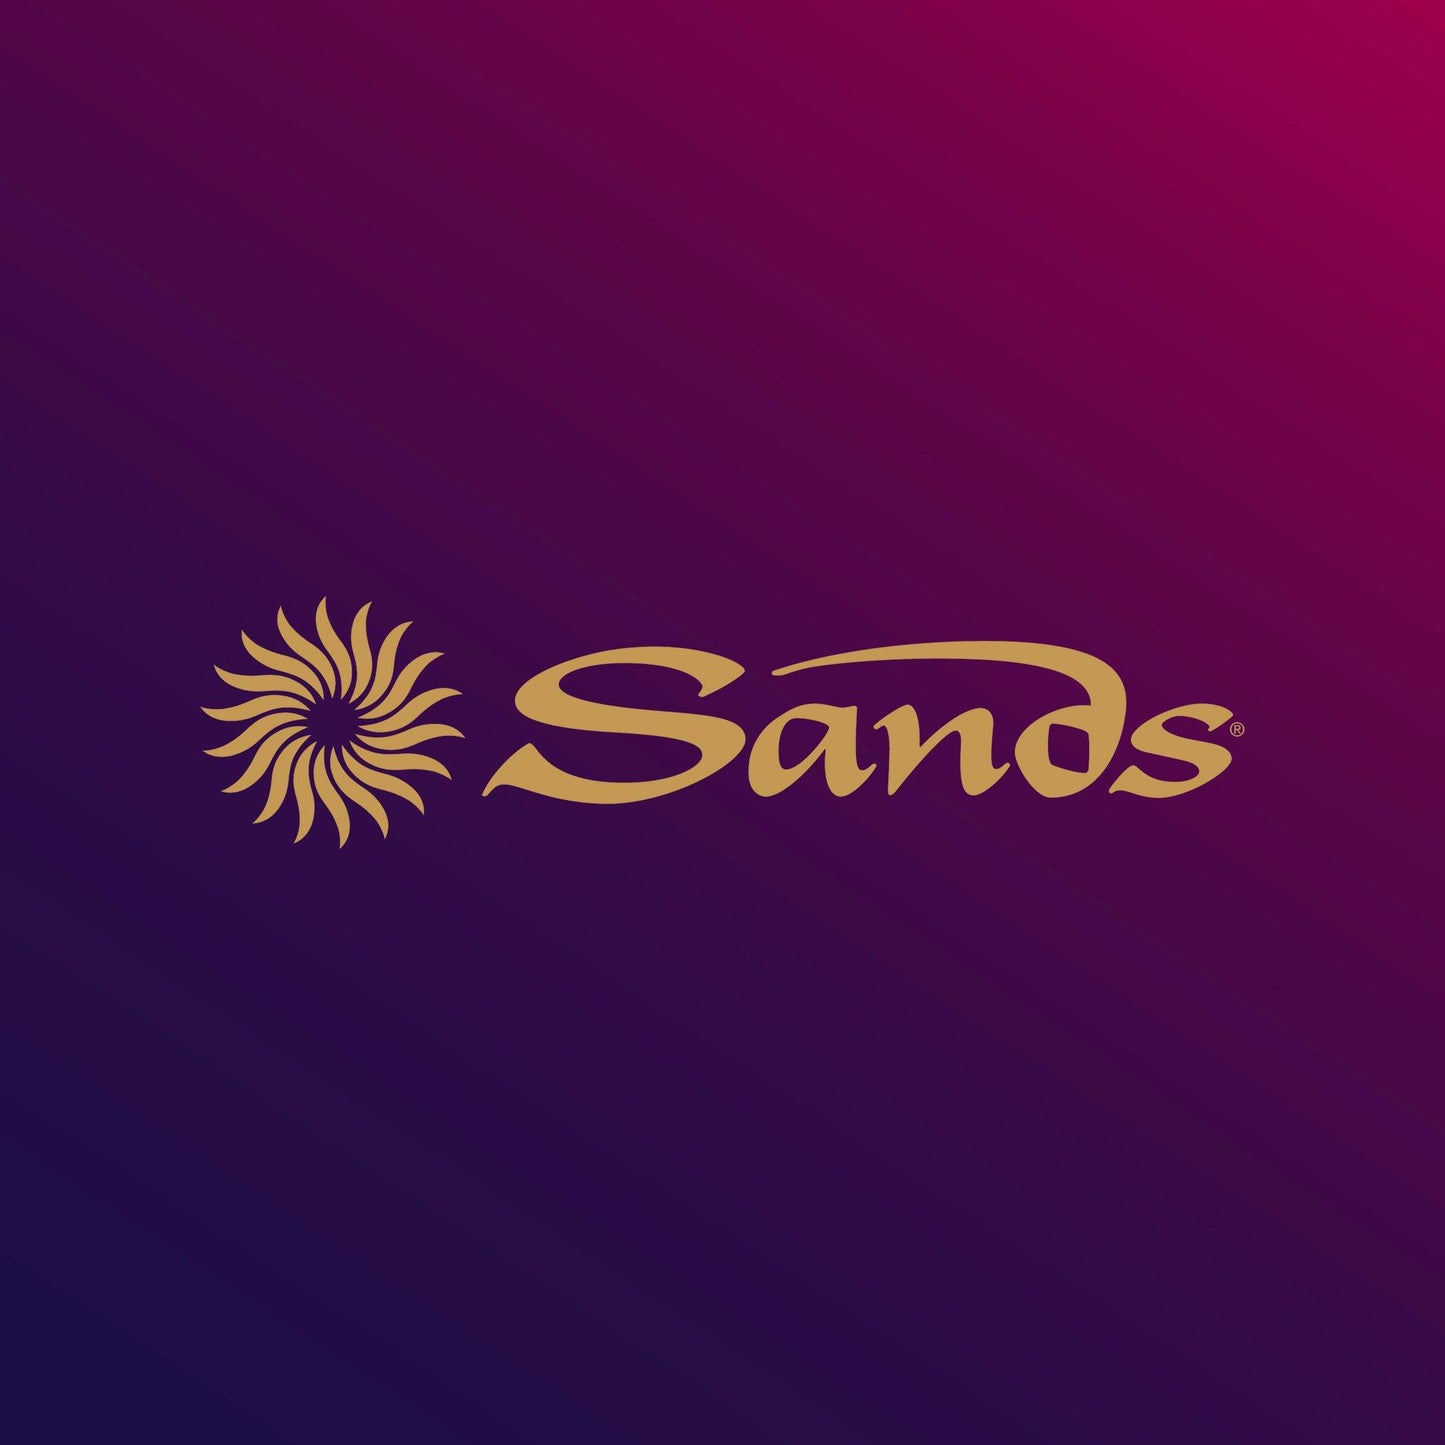 Sands Aviation Uniform Appointment